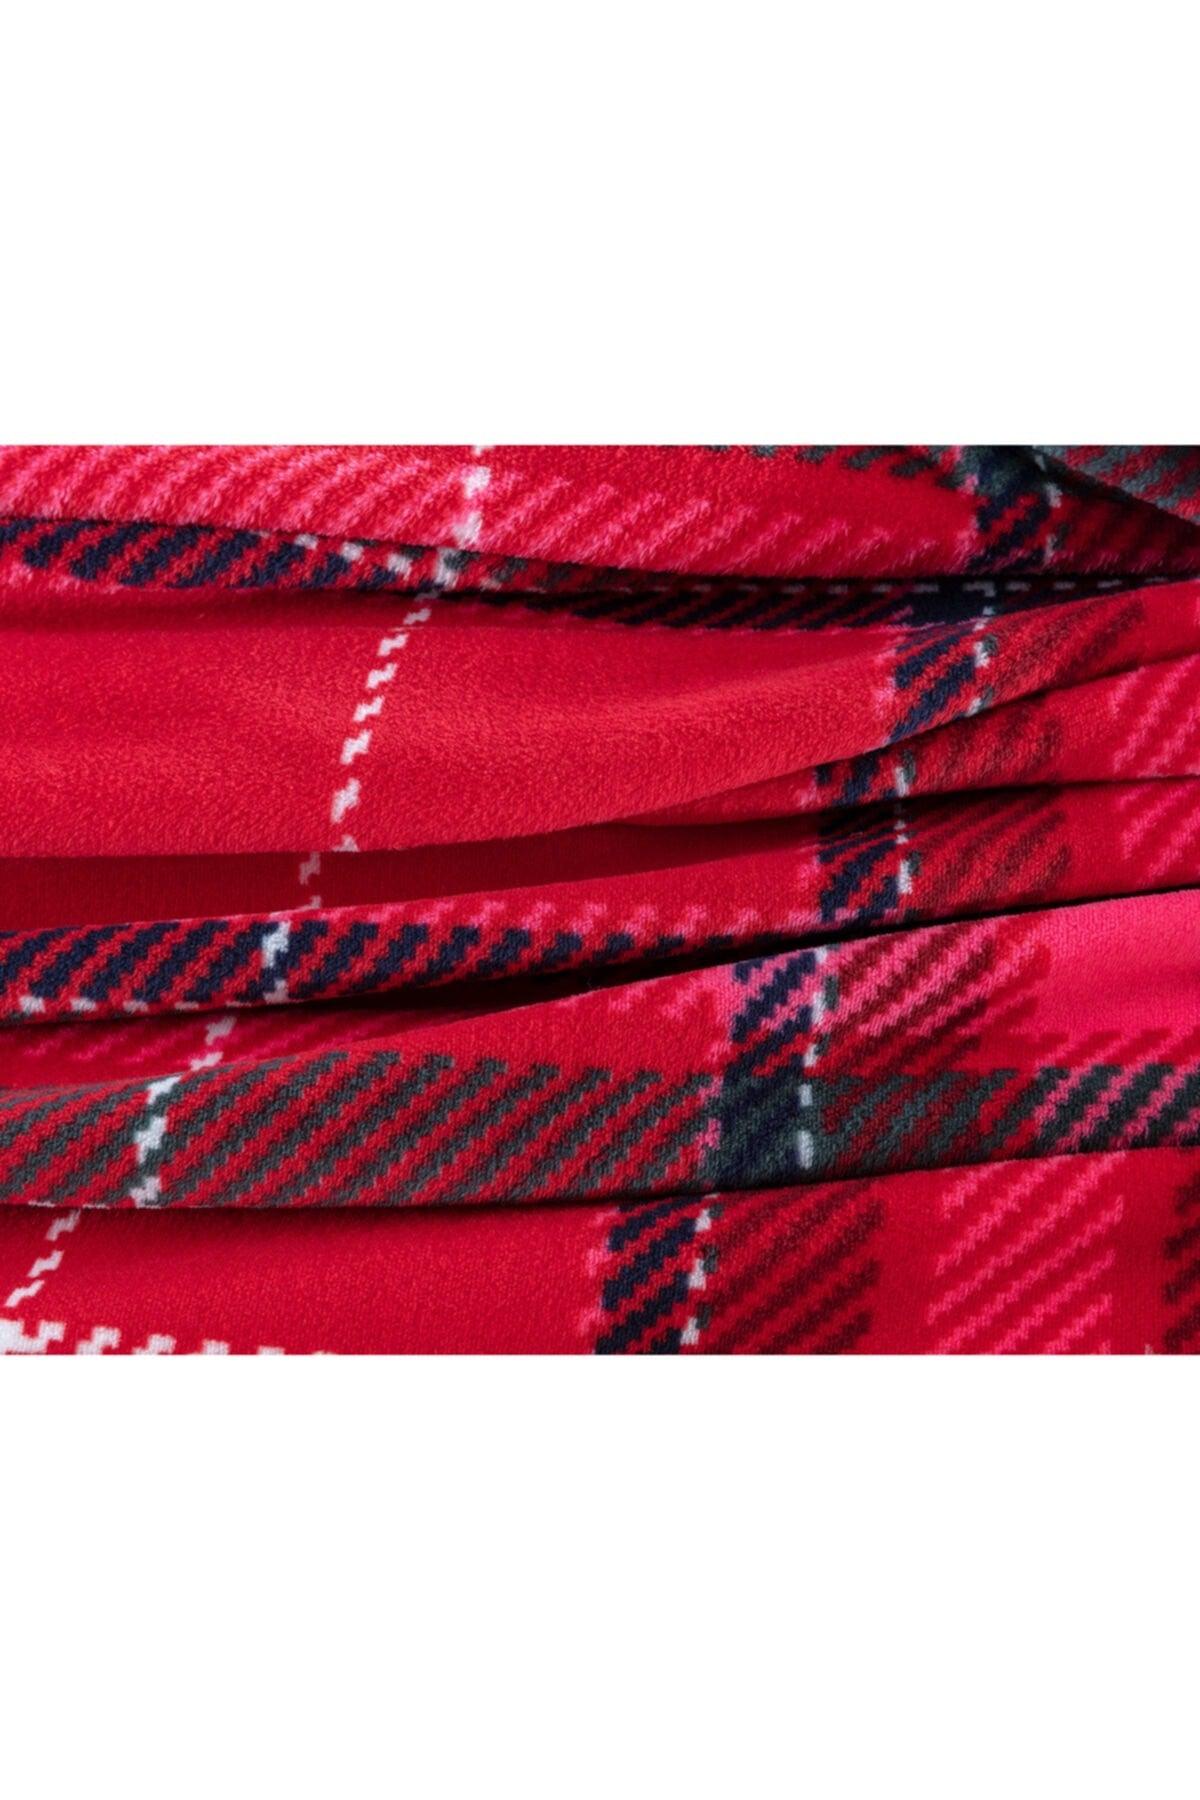 Antonin Welsoft Single Printed Blanket - Red - Swordslife